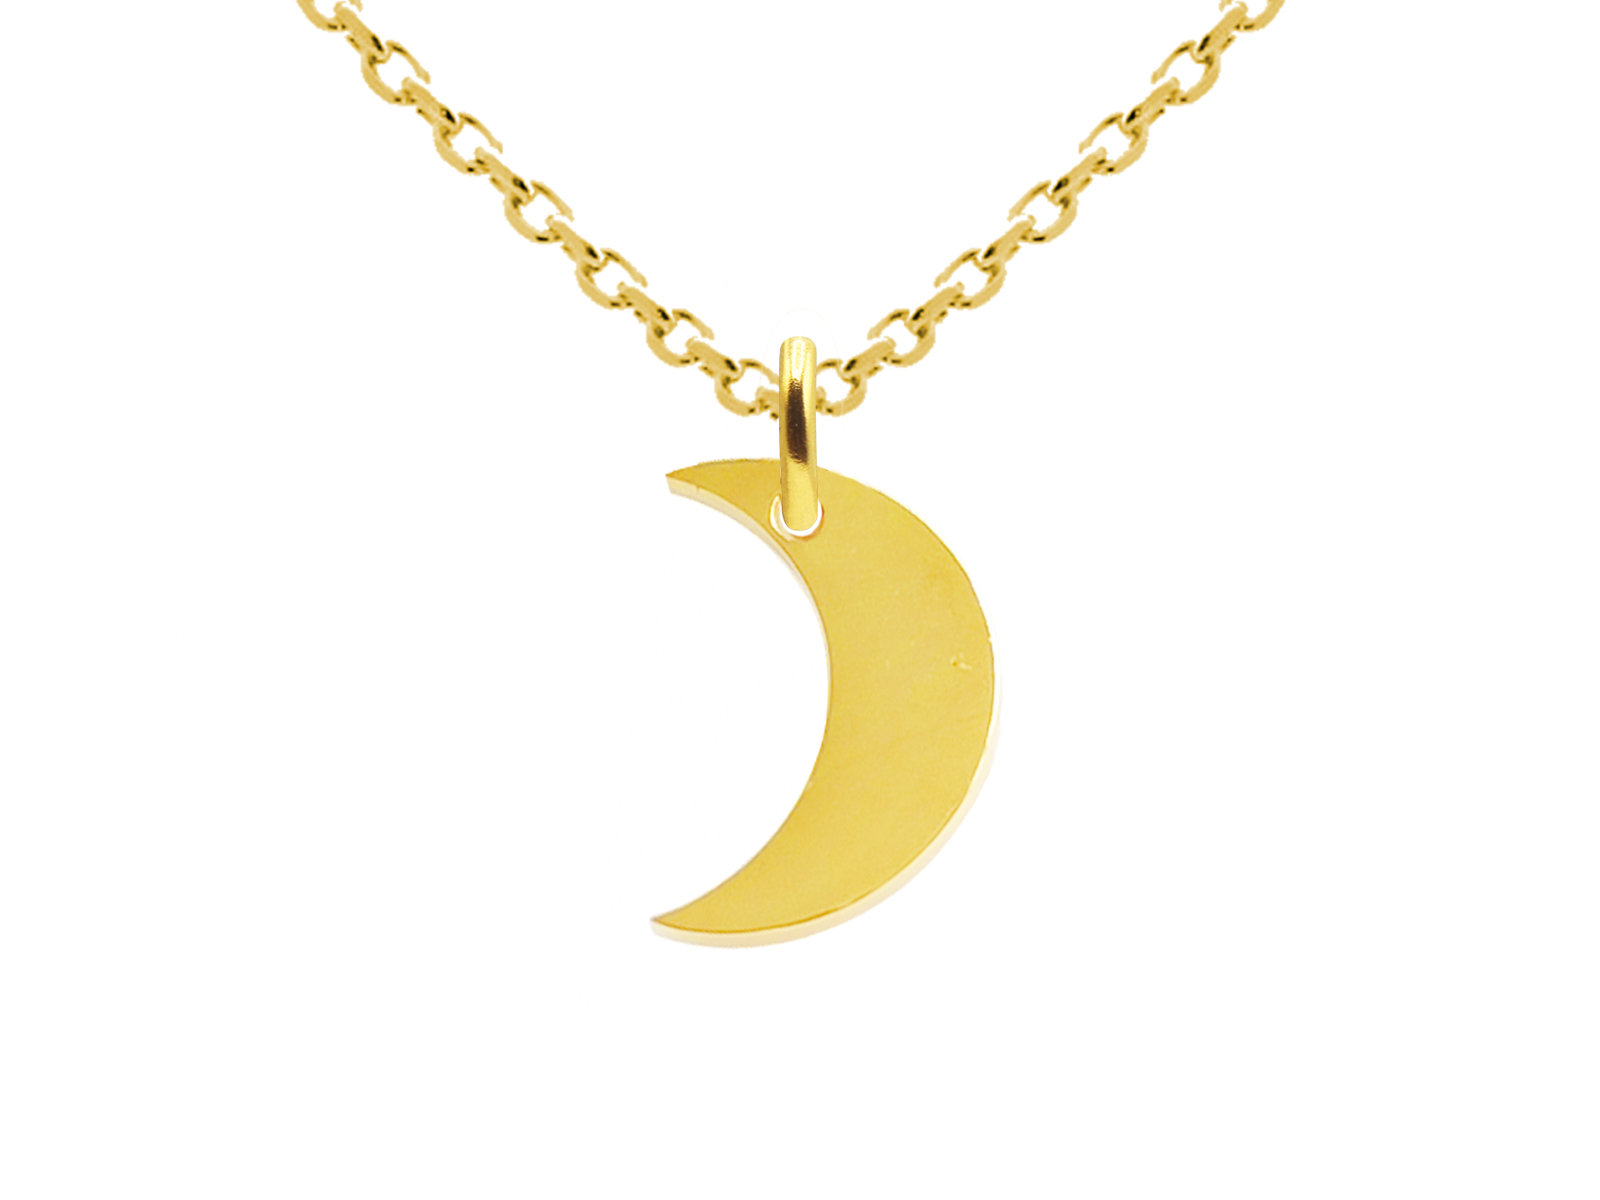 Collier orné d'un pendentif lune en acier inoxydable doré